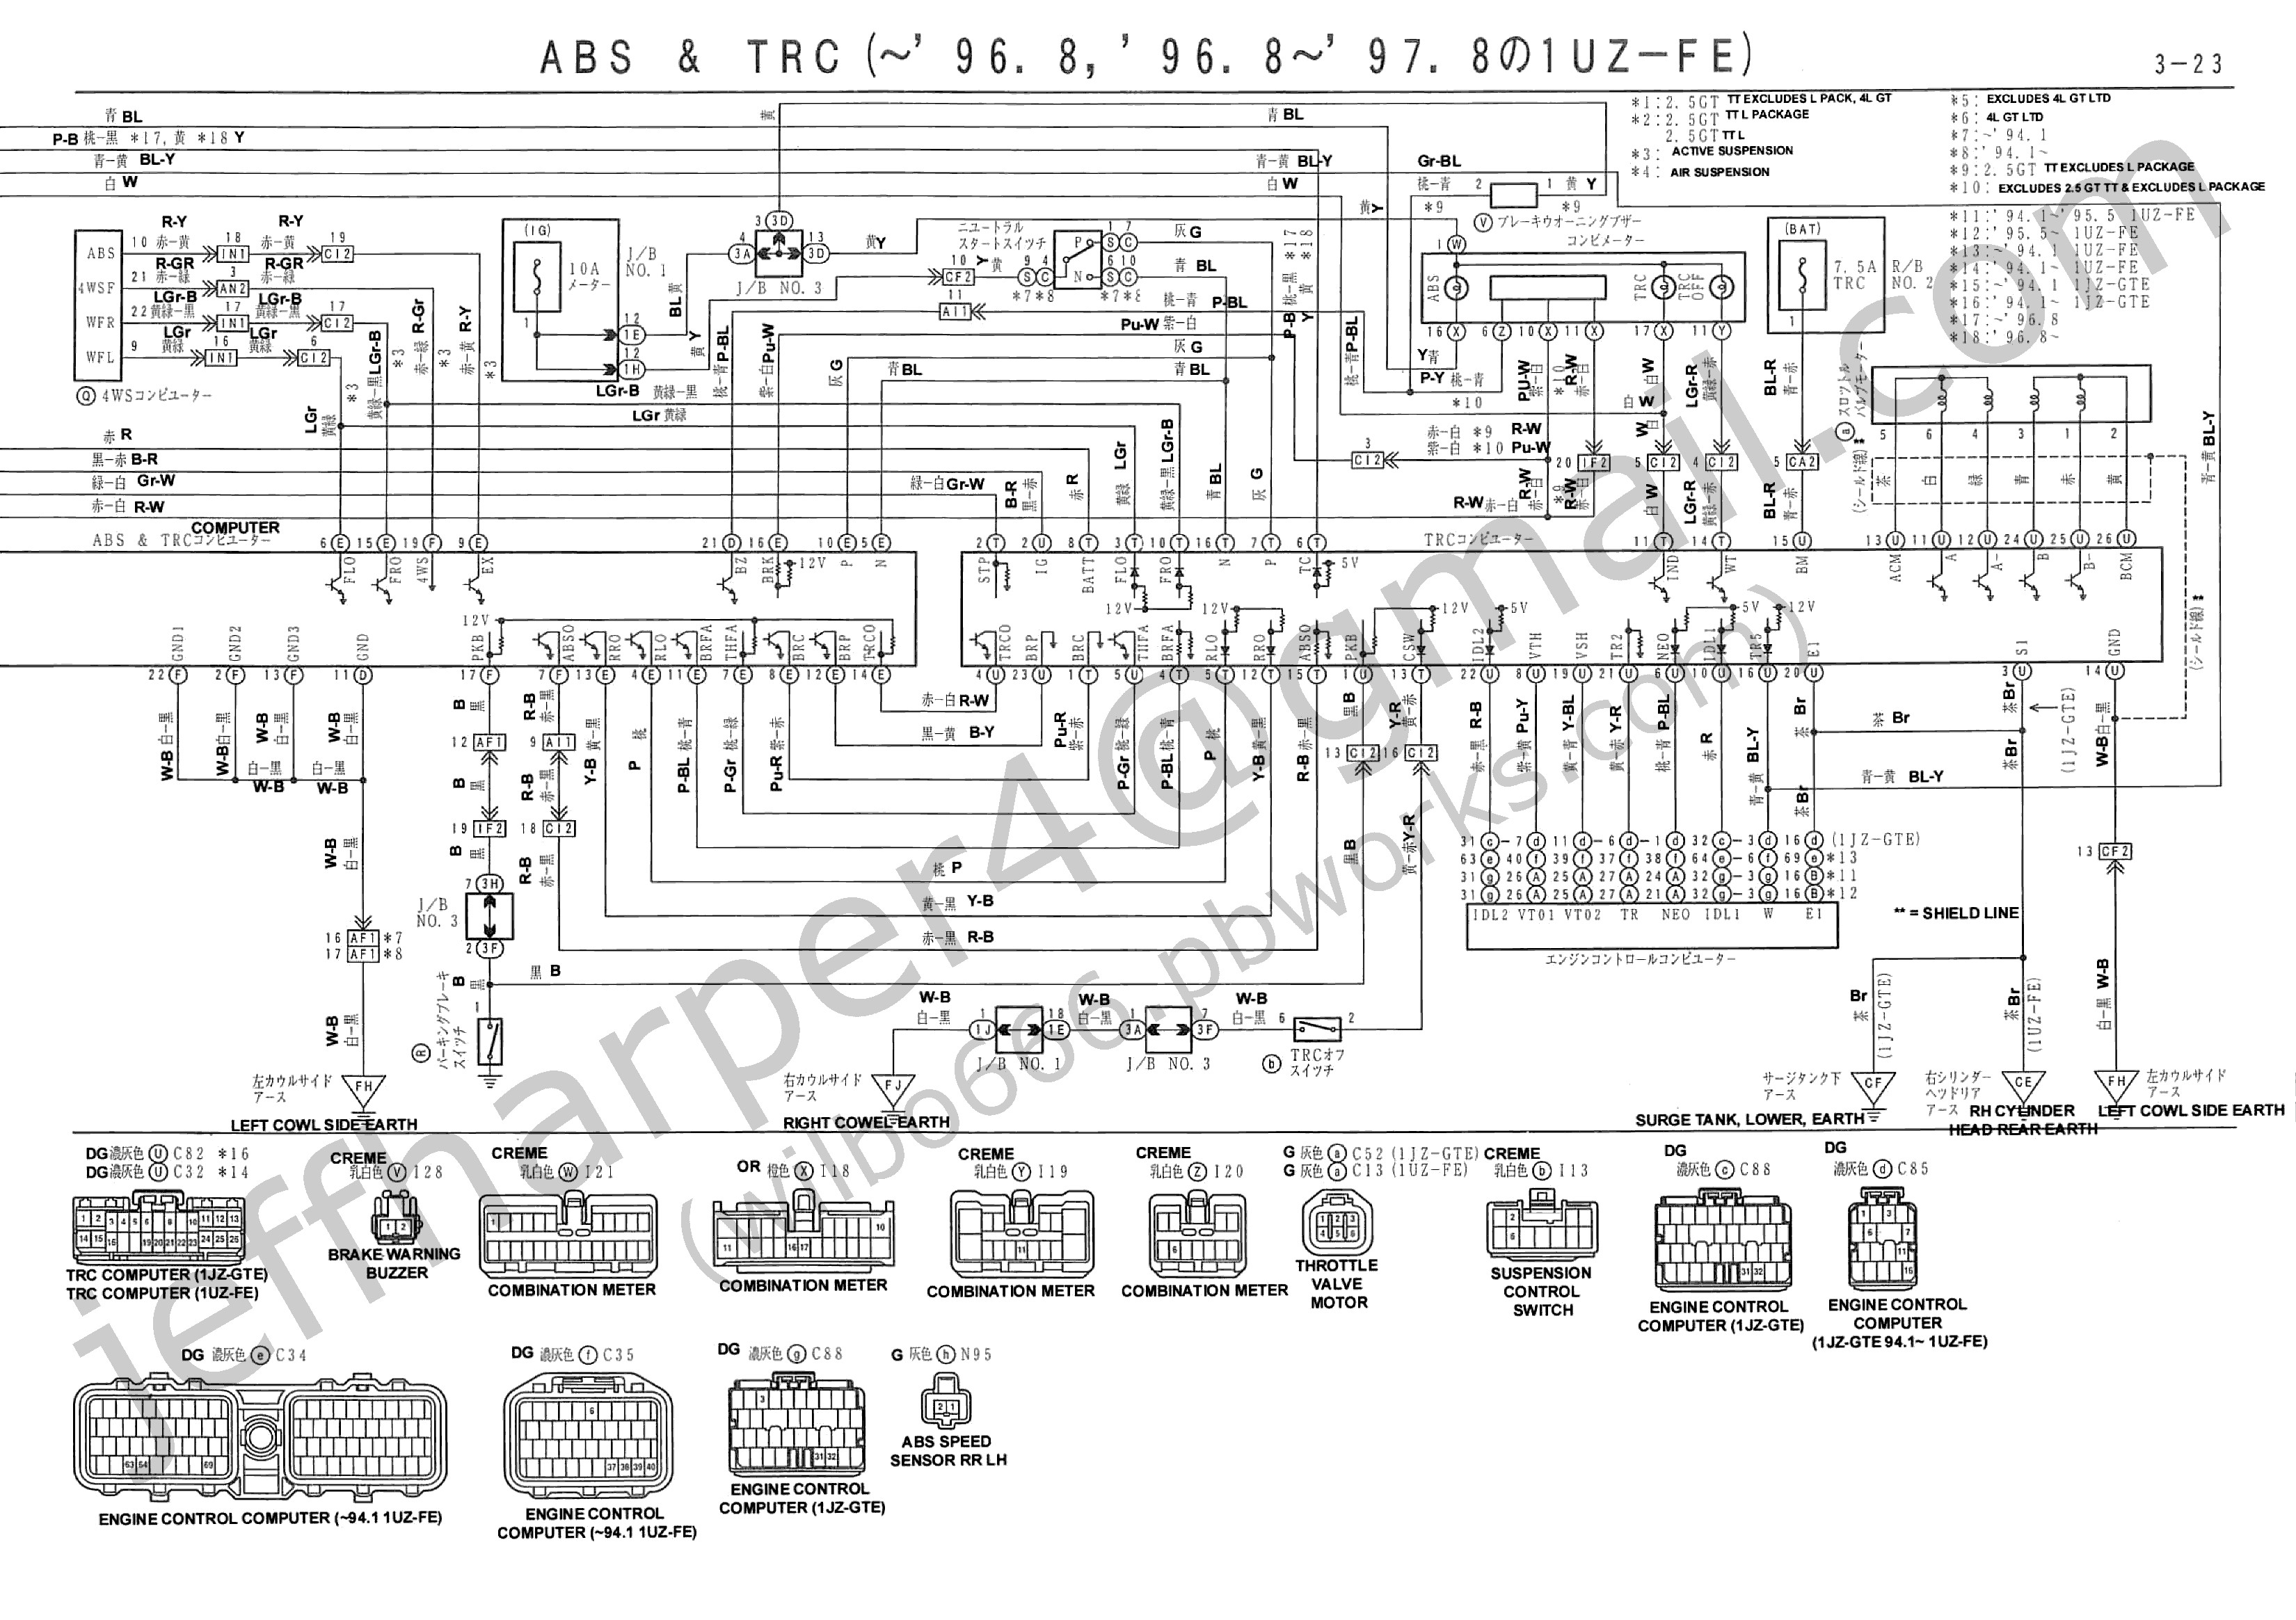 Car Engine Diagram and Explanation Wilbo666 1jz Gte Jzz30 soarer Engine Wiring Of Car Engine Diagram and Explanation